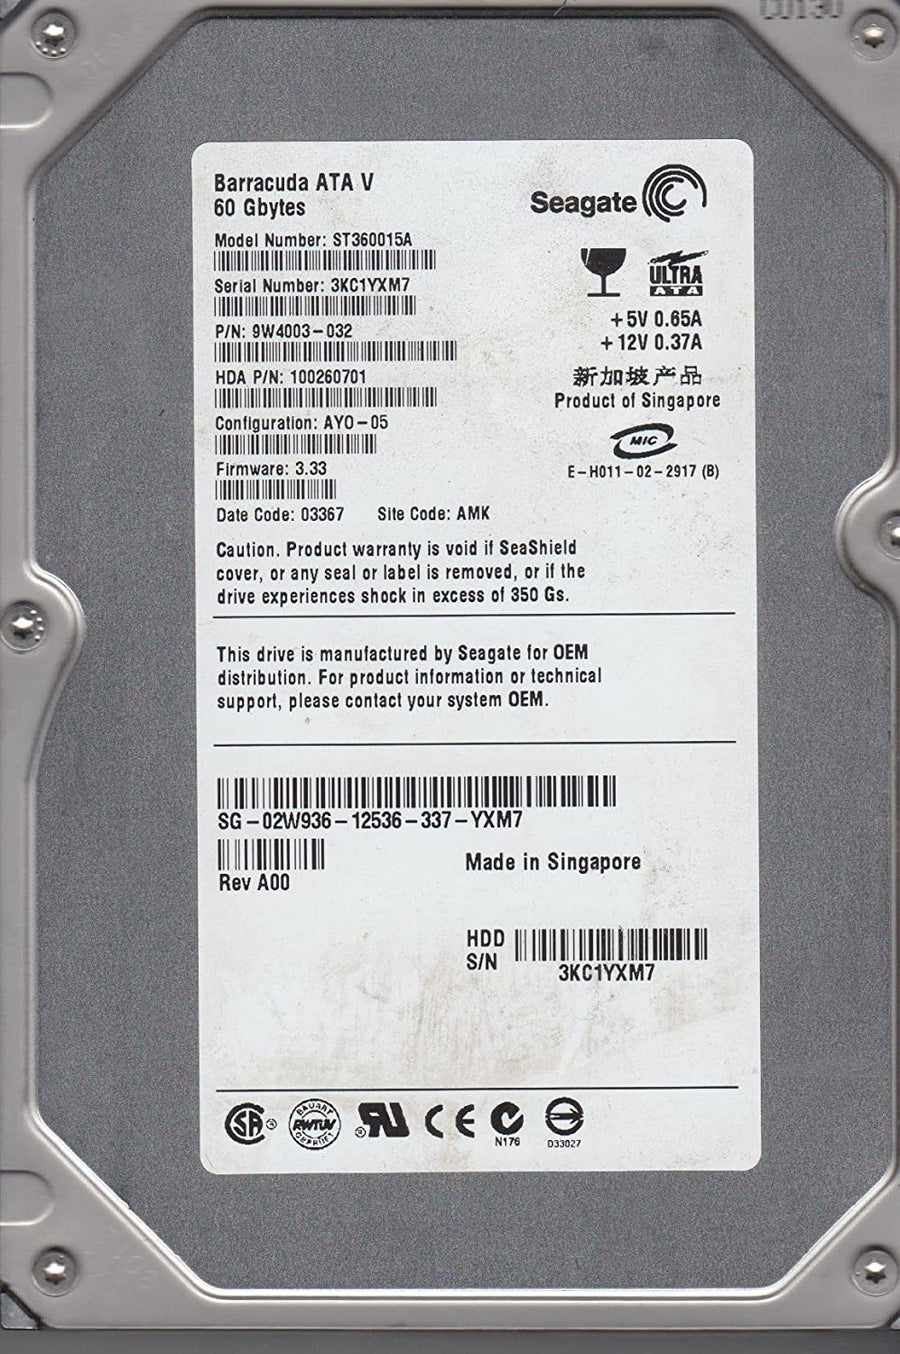 Seagate Dell 60GB 7200RPM ATA-100 3.5in HDD ( ST360015A 9W4003-032 02W936 ) REF